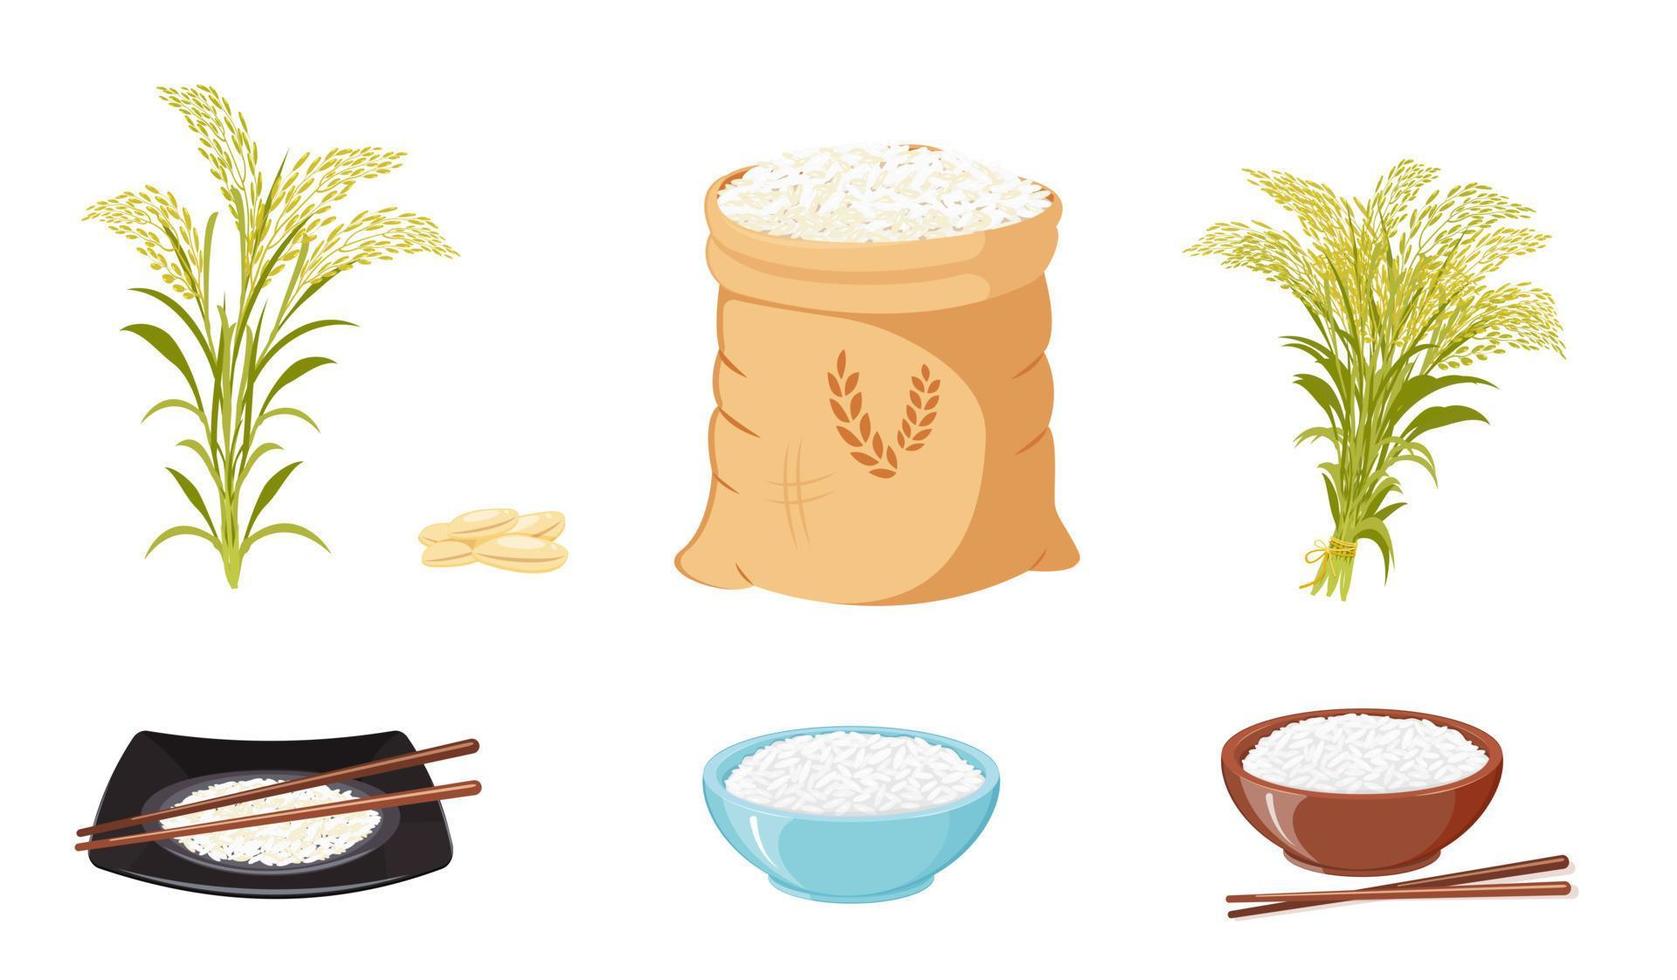 produits à base de riz, semences et utilisation de la récolte finie. gerbes et tiges de riz. stockage des céréales dans un sac en toile. vecteur